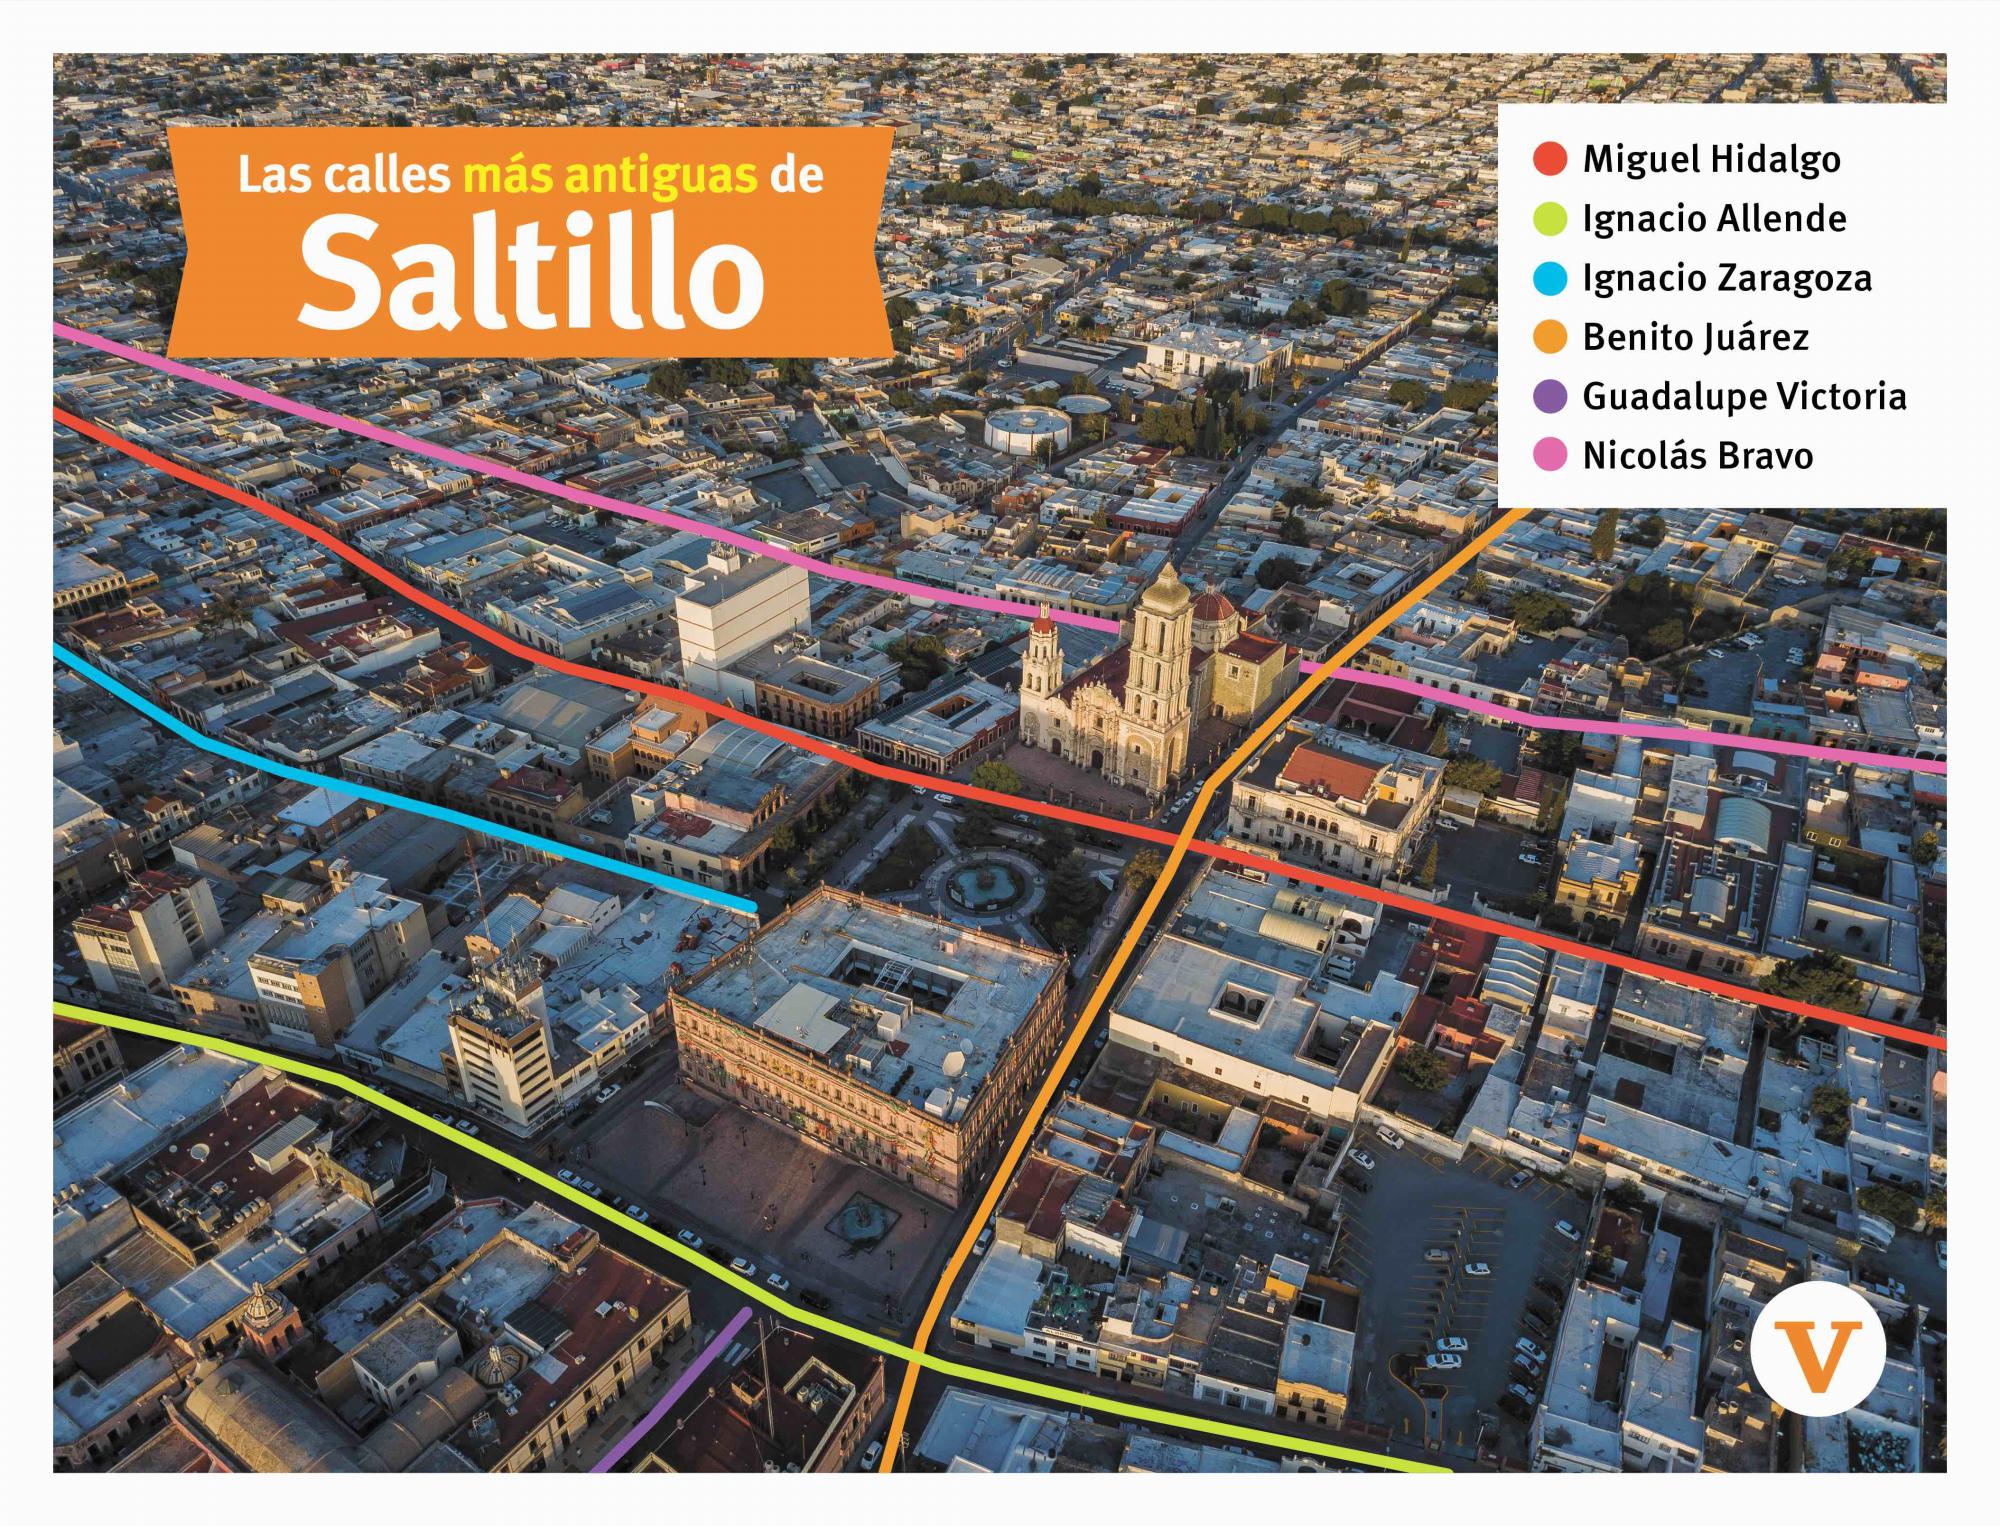 $!Foto mapa actual del Centro Histórico de Saltillo